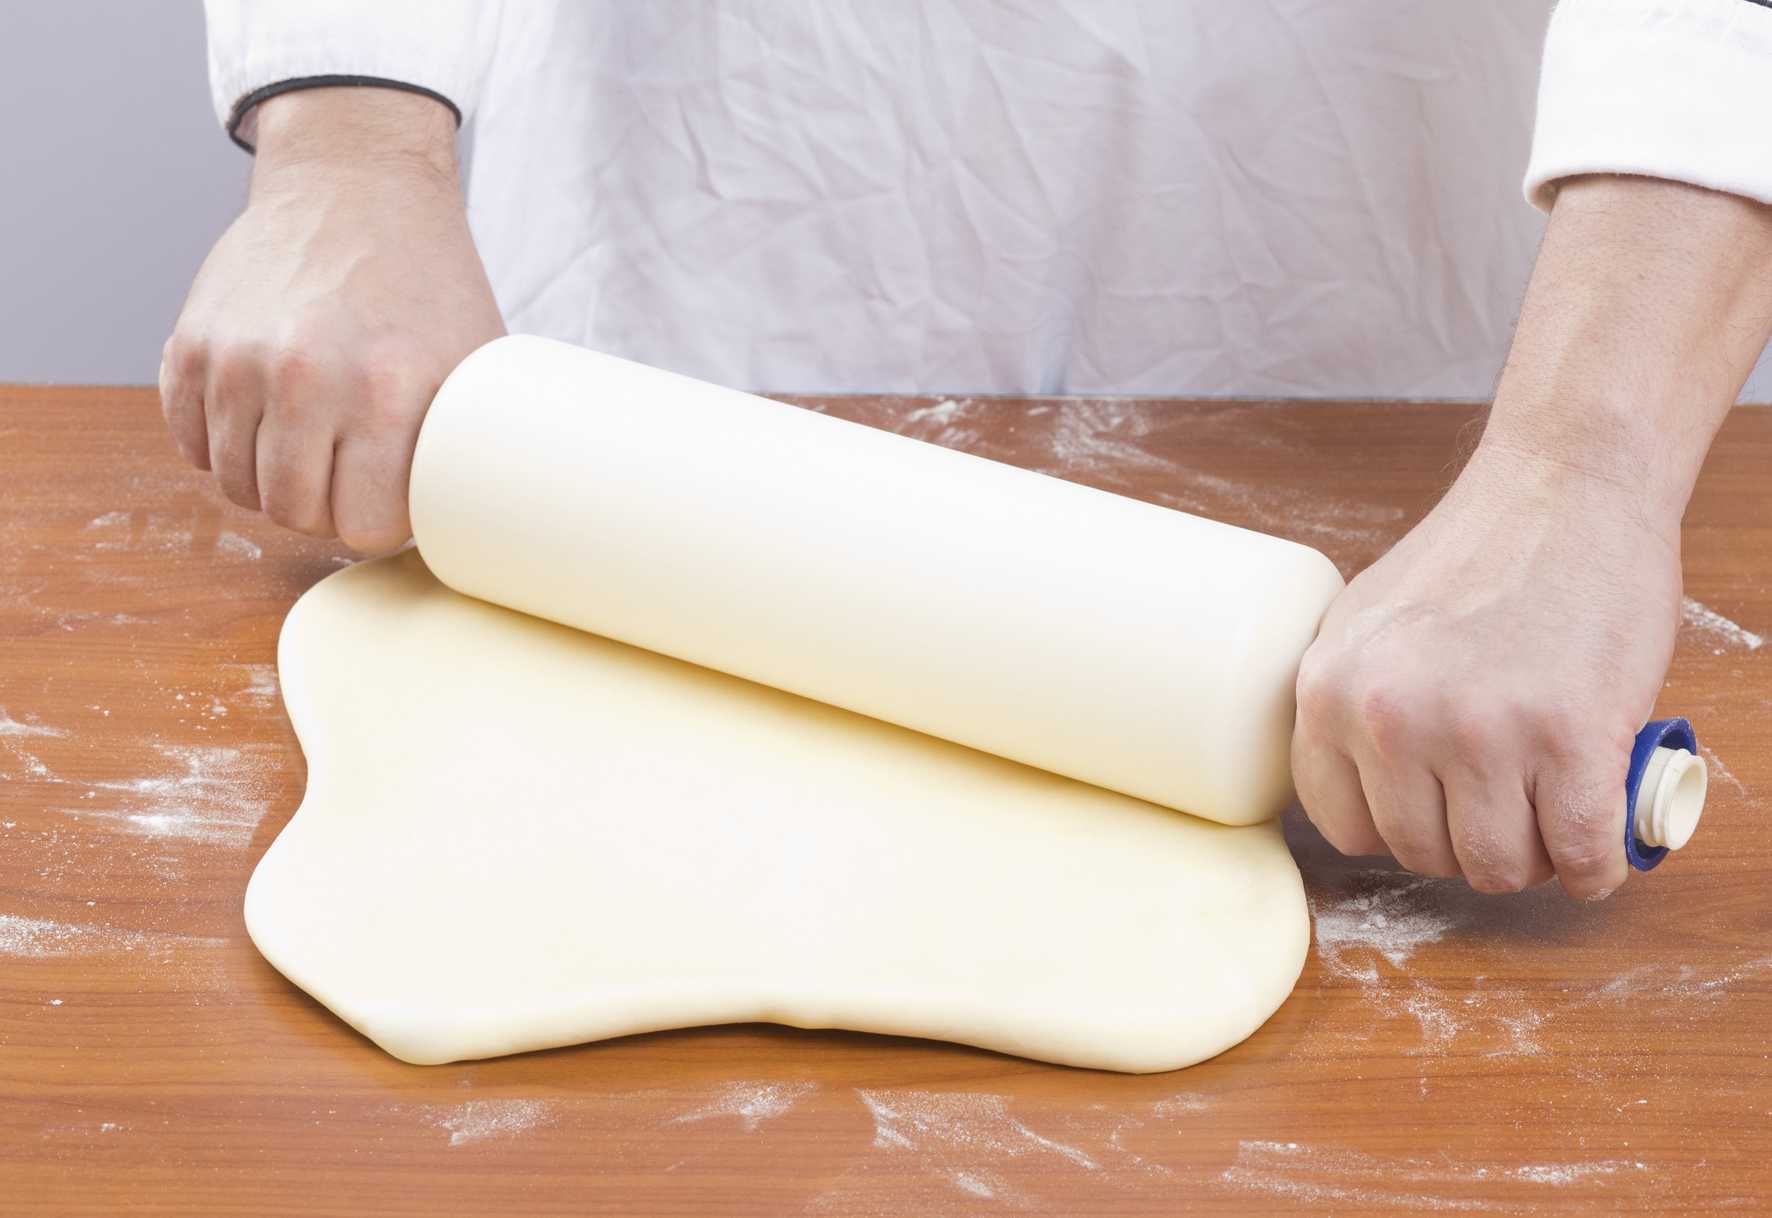 К чему снится тесто (женщине, девушке): месить руками, замешивать для пирогов, блинов, хлеба, пельменей, раскатывать дрожжевое, пышное, сырое и прочее